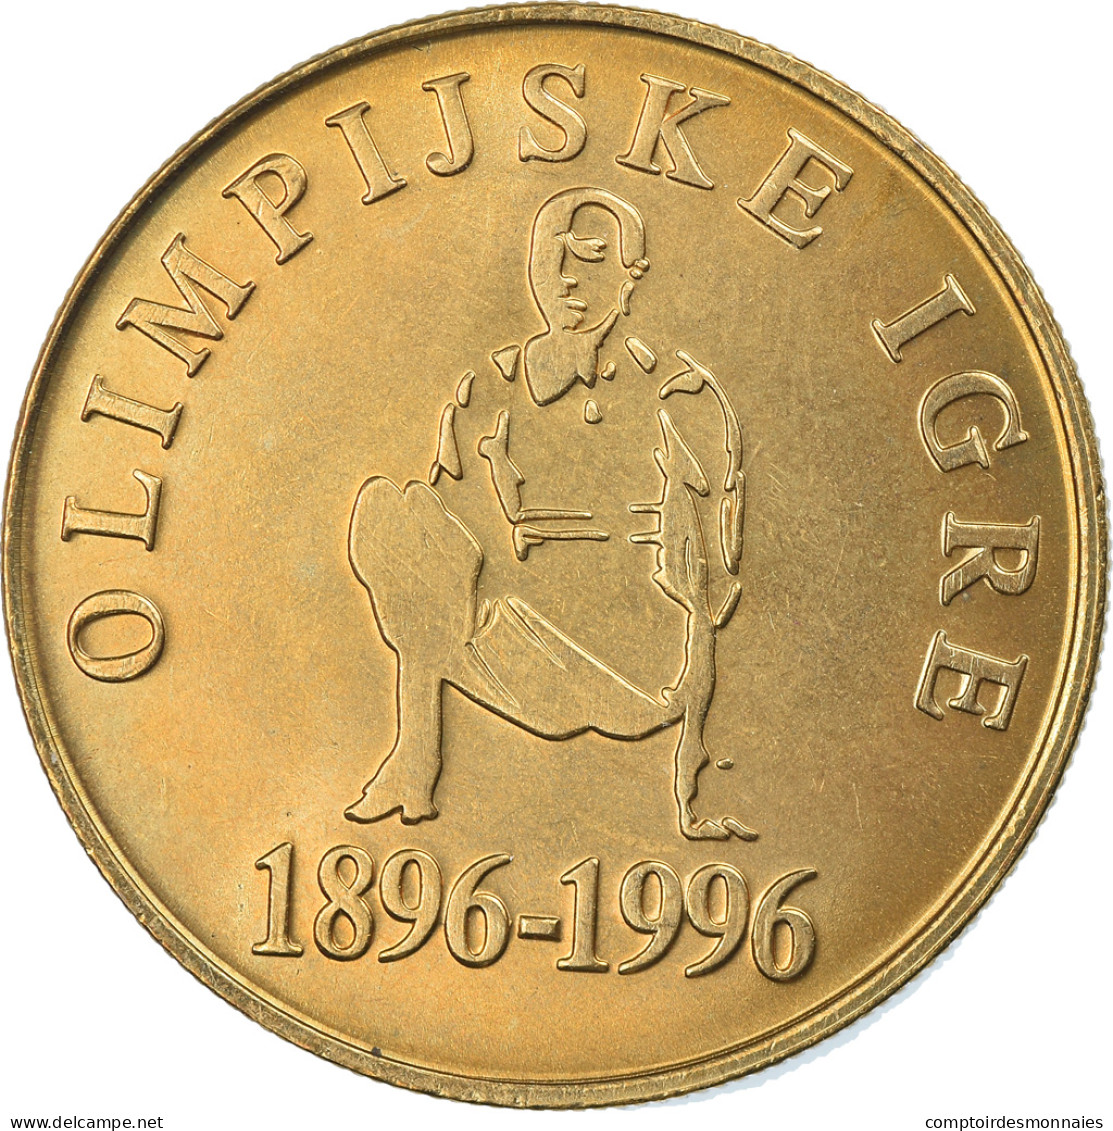 Monnaie, Slovénie, 5 Tolarjev, 1996, FDC, Nickel-brass, KM:33 - Eslovenia